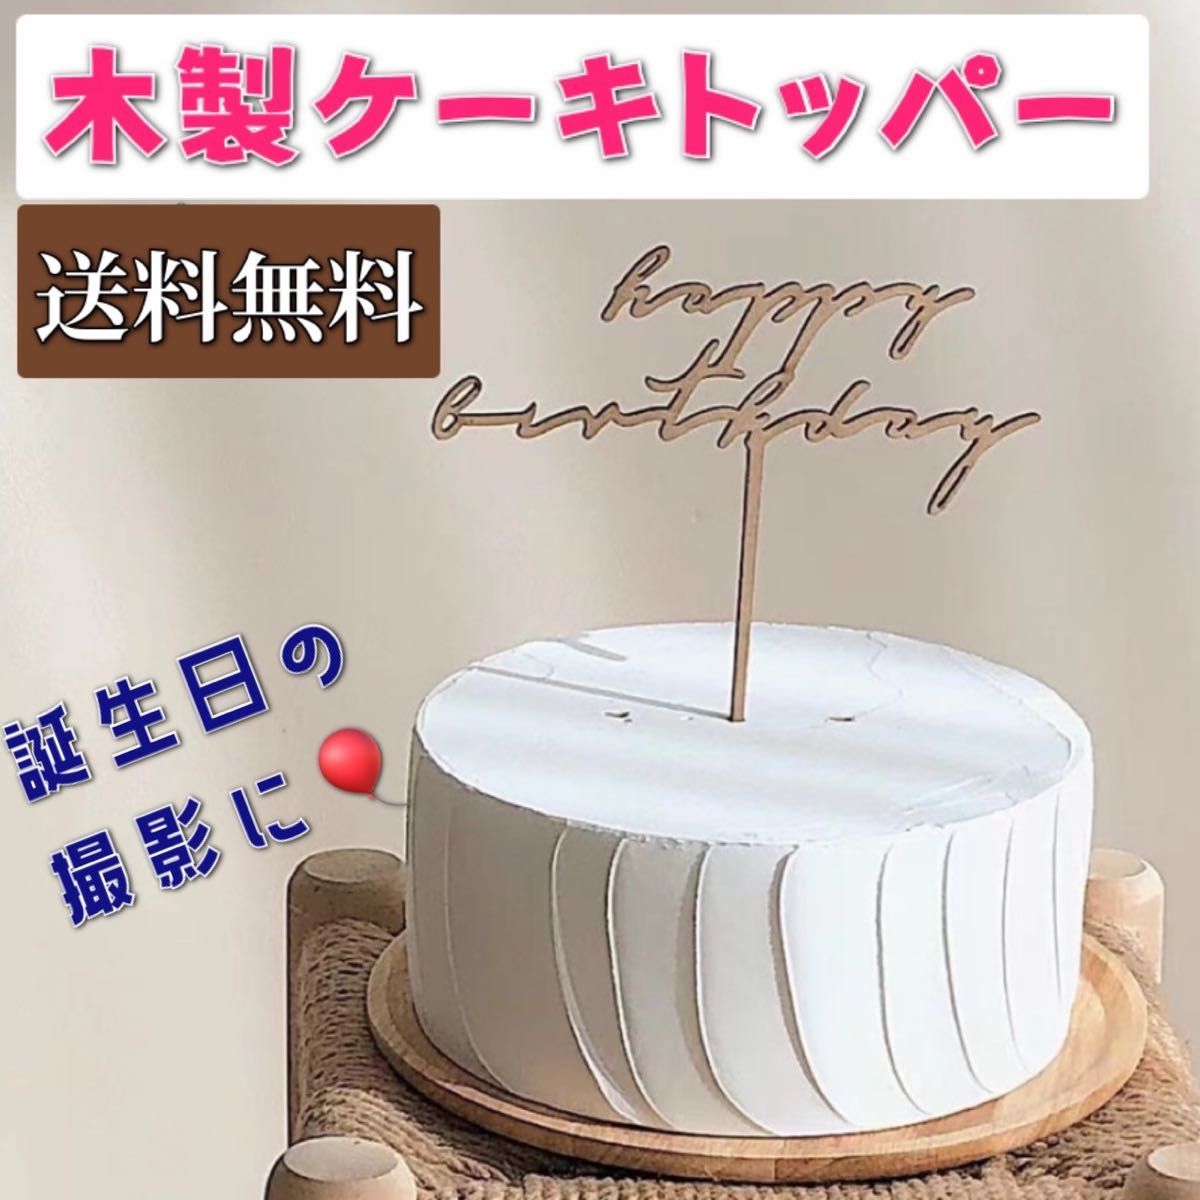 誕生日 ケーキトッパー ウッドバナー シンプル お祝い 撮影 装飾 木製 記念